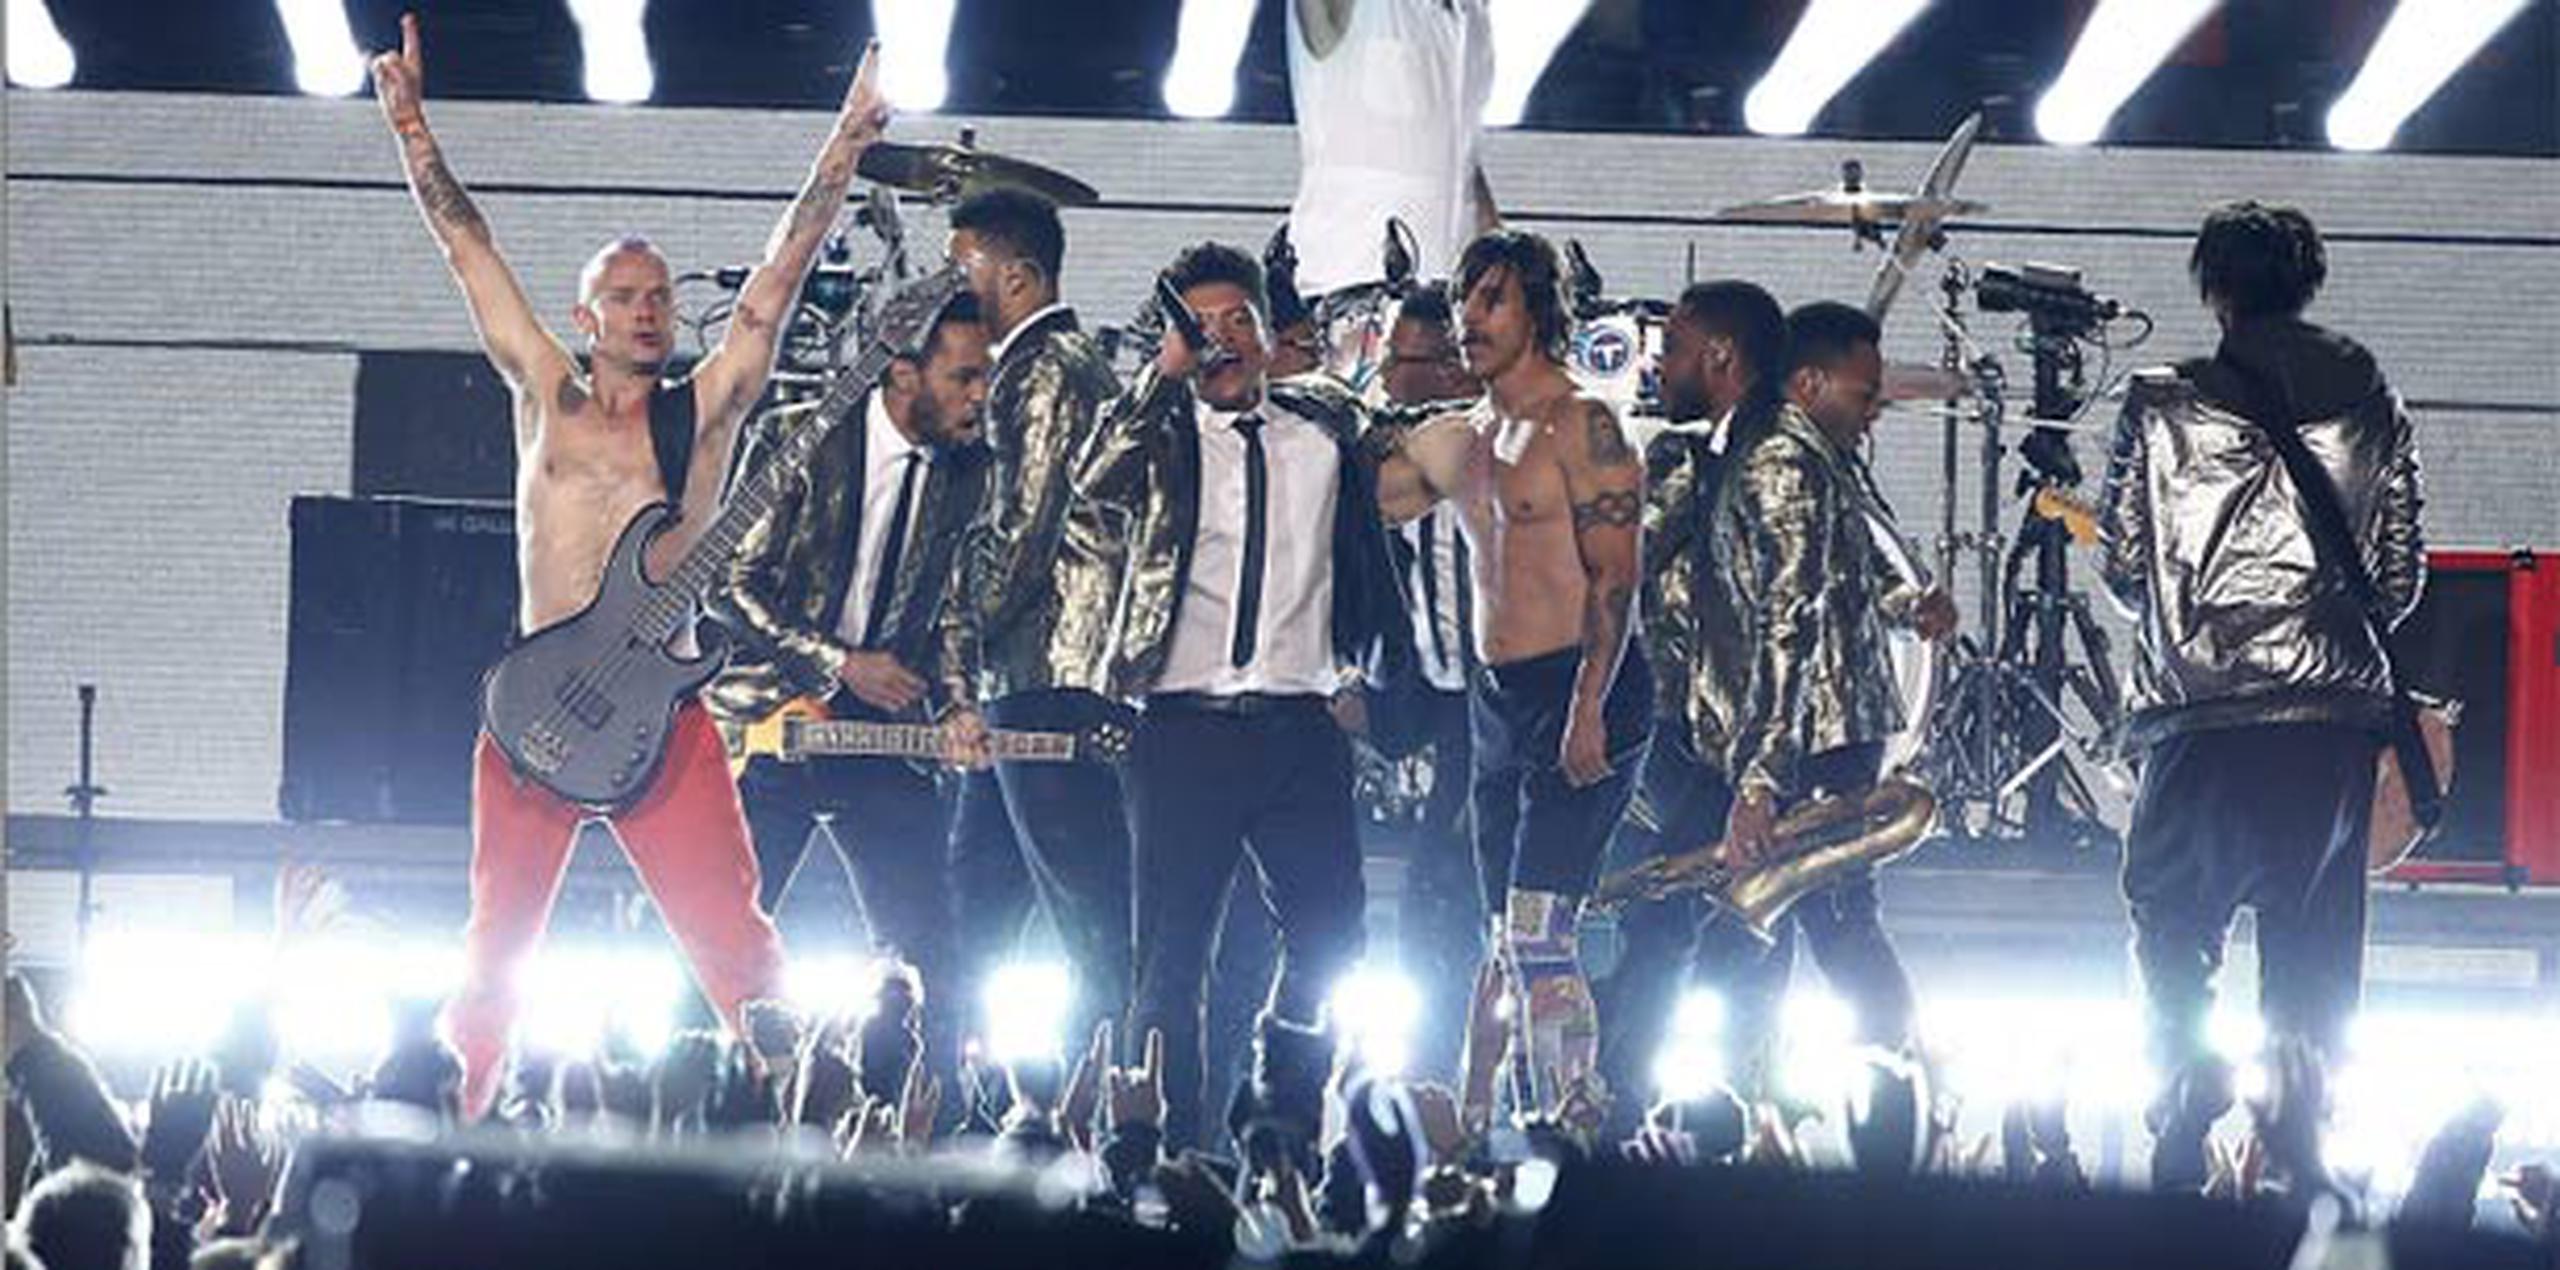 En el pasado Super Bowl, los artistas invitados fueron Bruno Mars y los Red Hot Chili Peppers.  (Archivo/EFE)